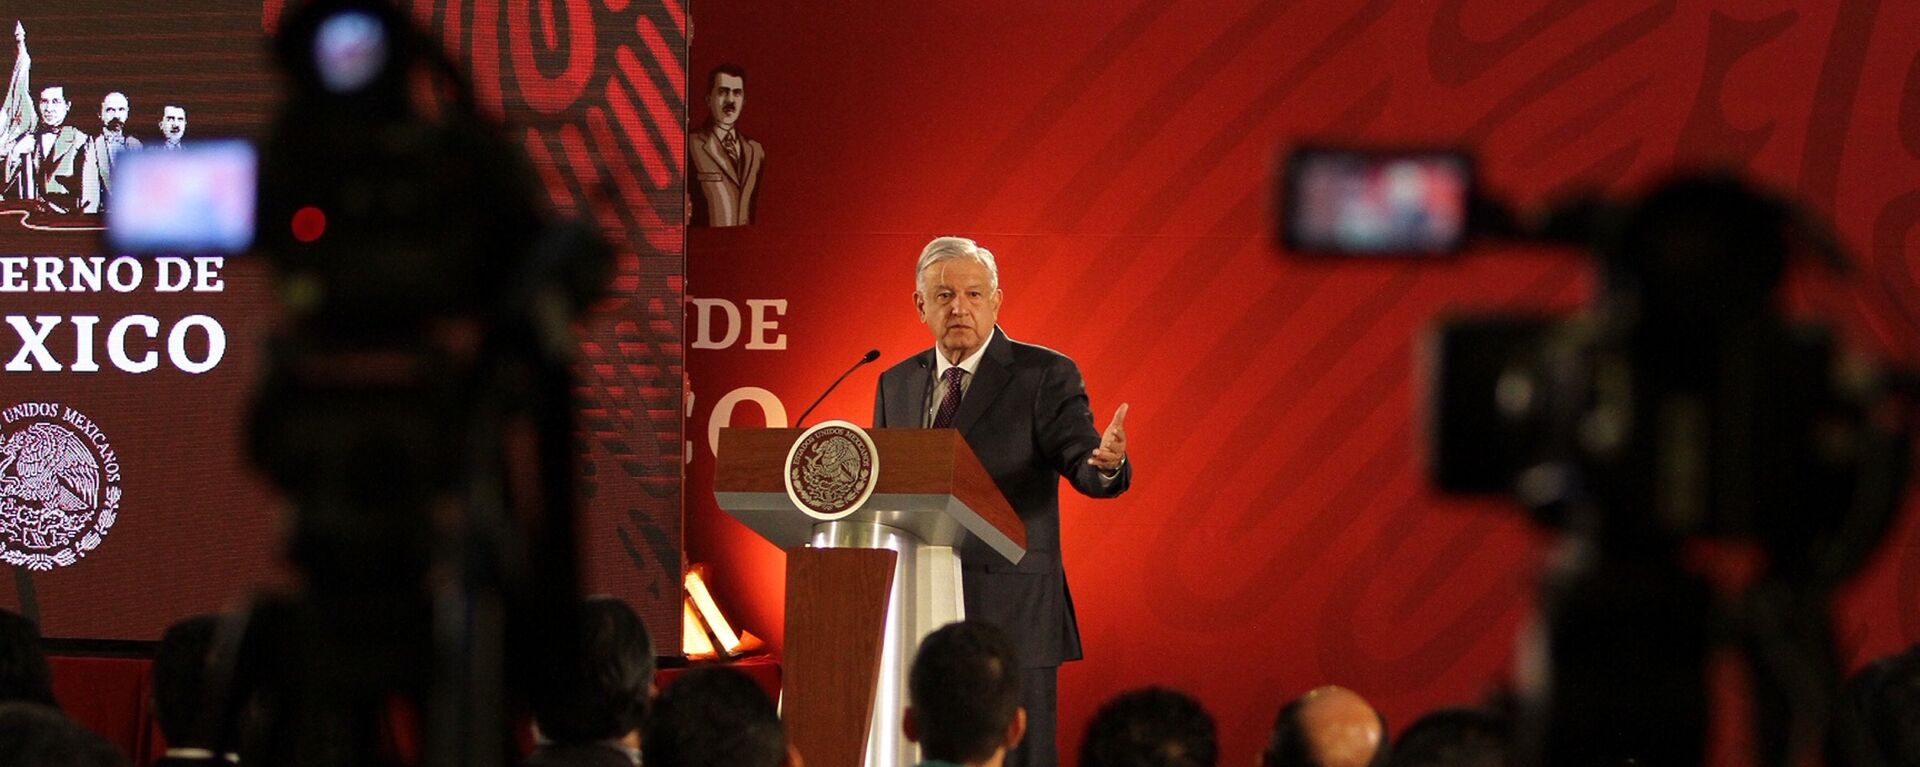 Andrés Manuel López Obrador, presidente de México - Sputnik Mundo, 1920, 25.11.2021